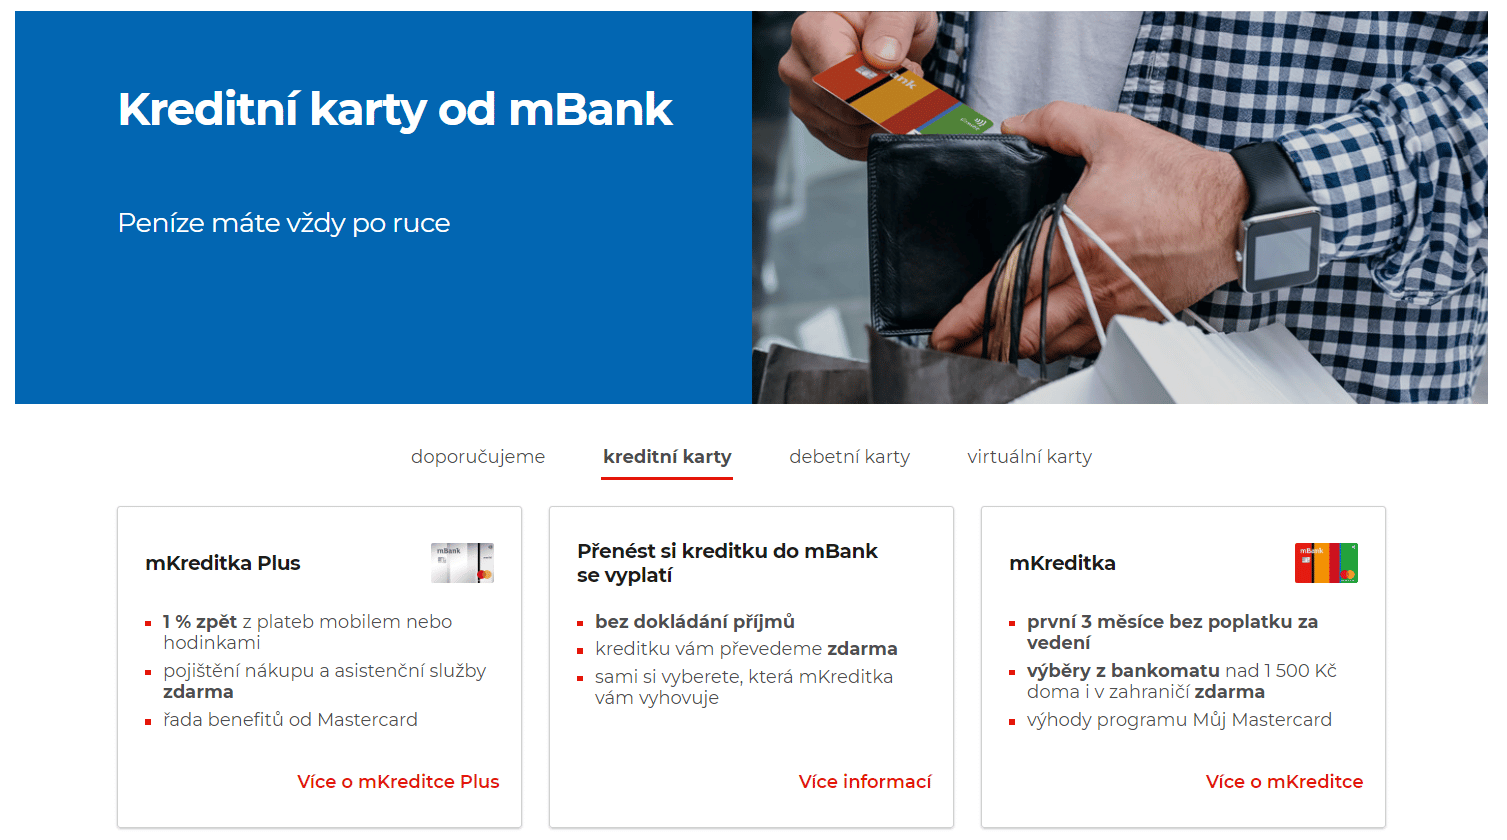 Mbank Kreditni Karty